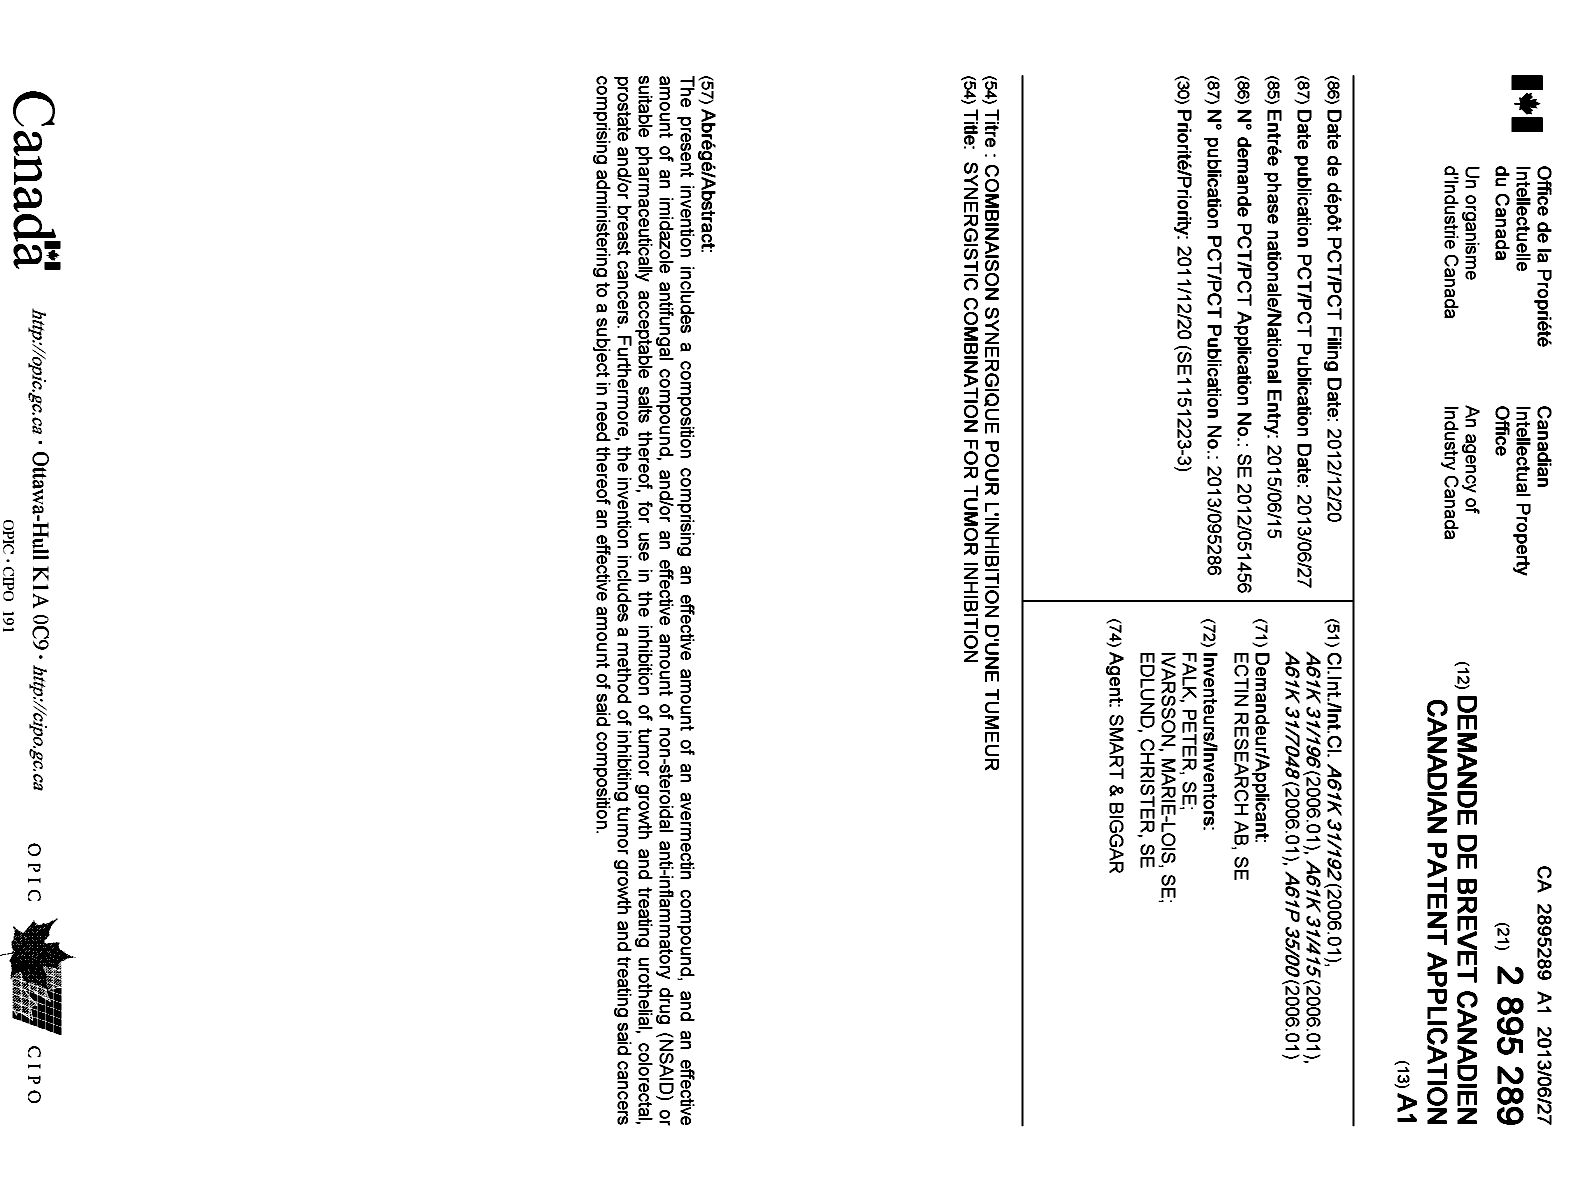 Document de brevet canadien 2895289. Page couverture 20141220. Image 1 de 1